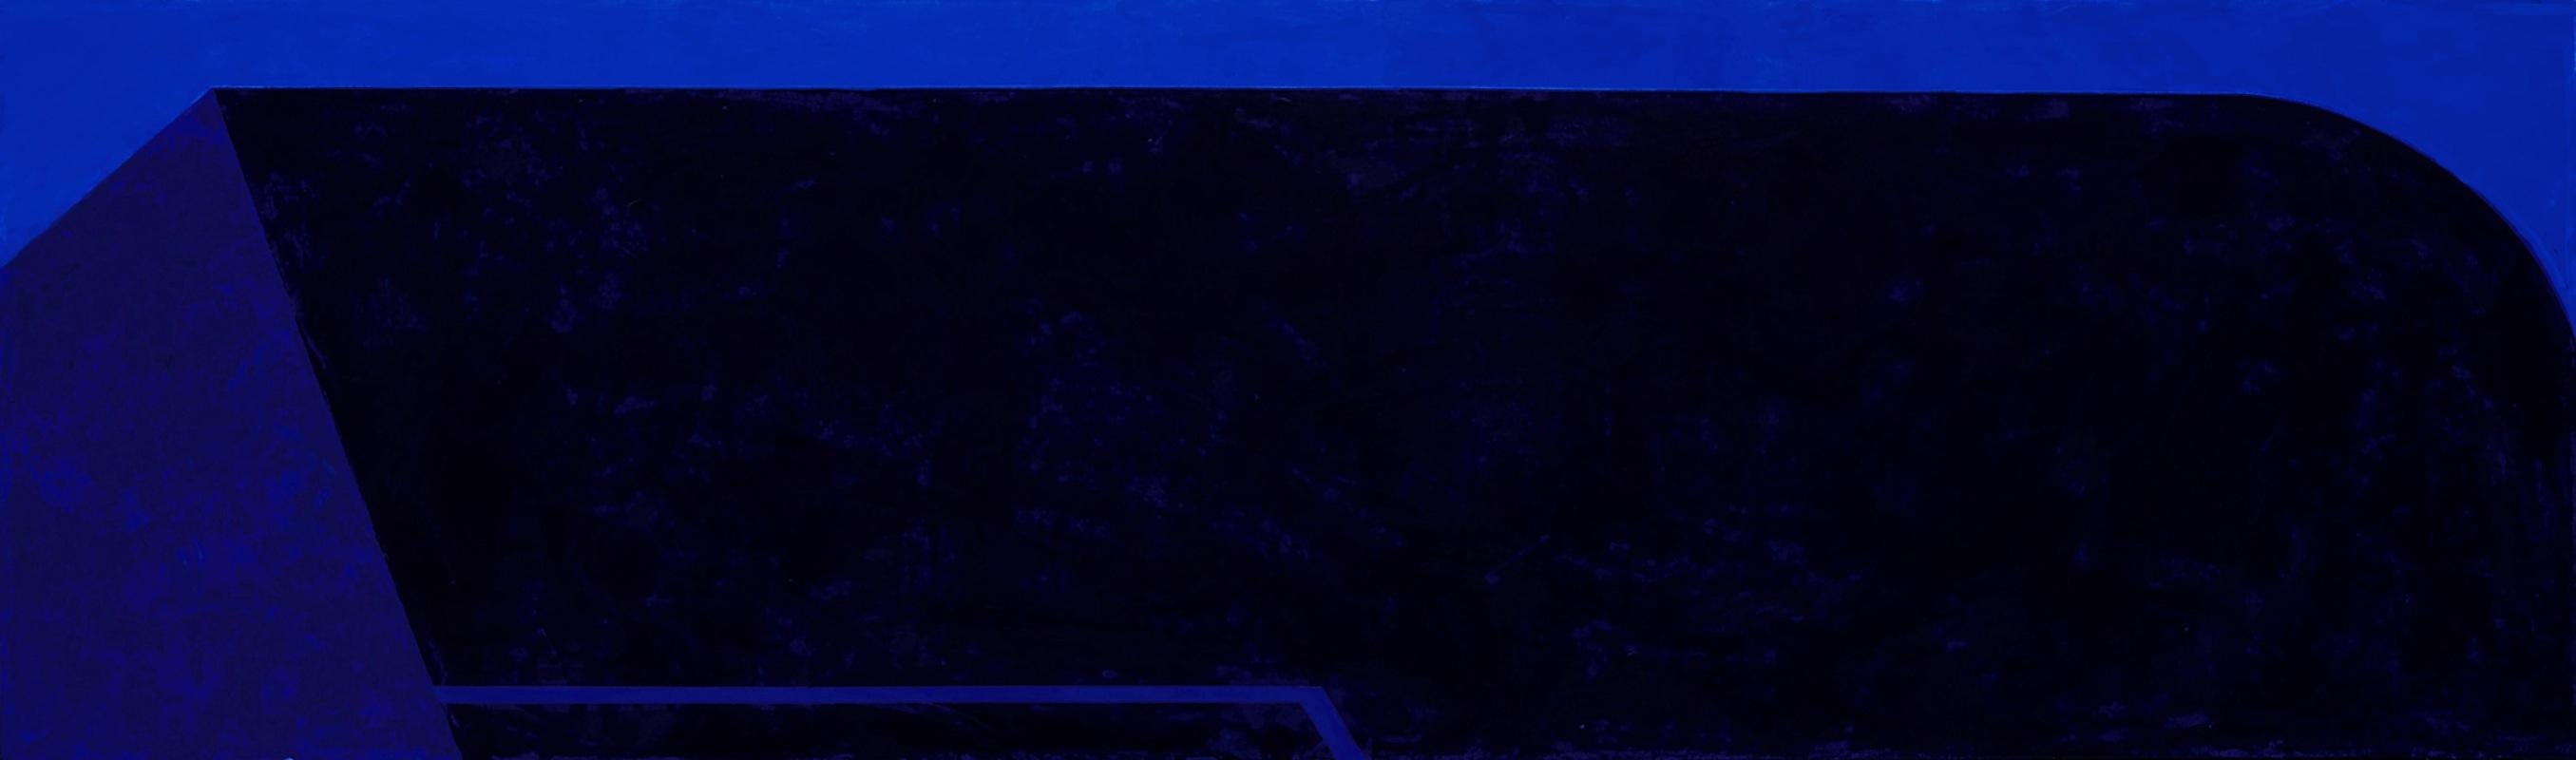 Macyn Bolt, Shift II, 2018, Minimalist, acrylic on canvas, 20 x 24 x 2 inches For Sale 7